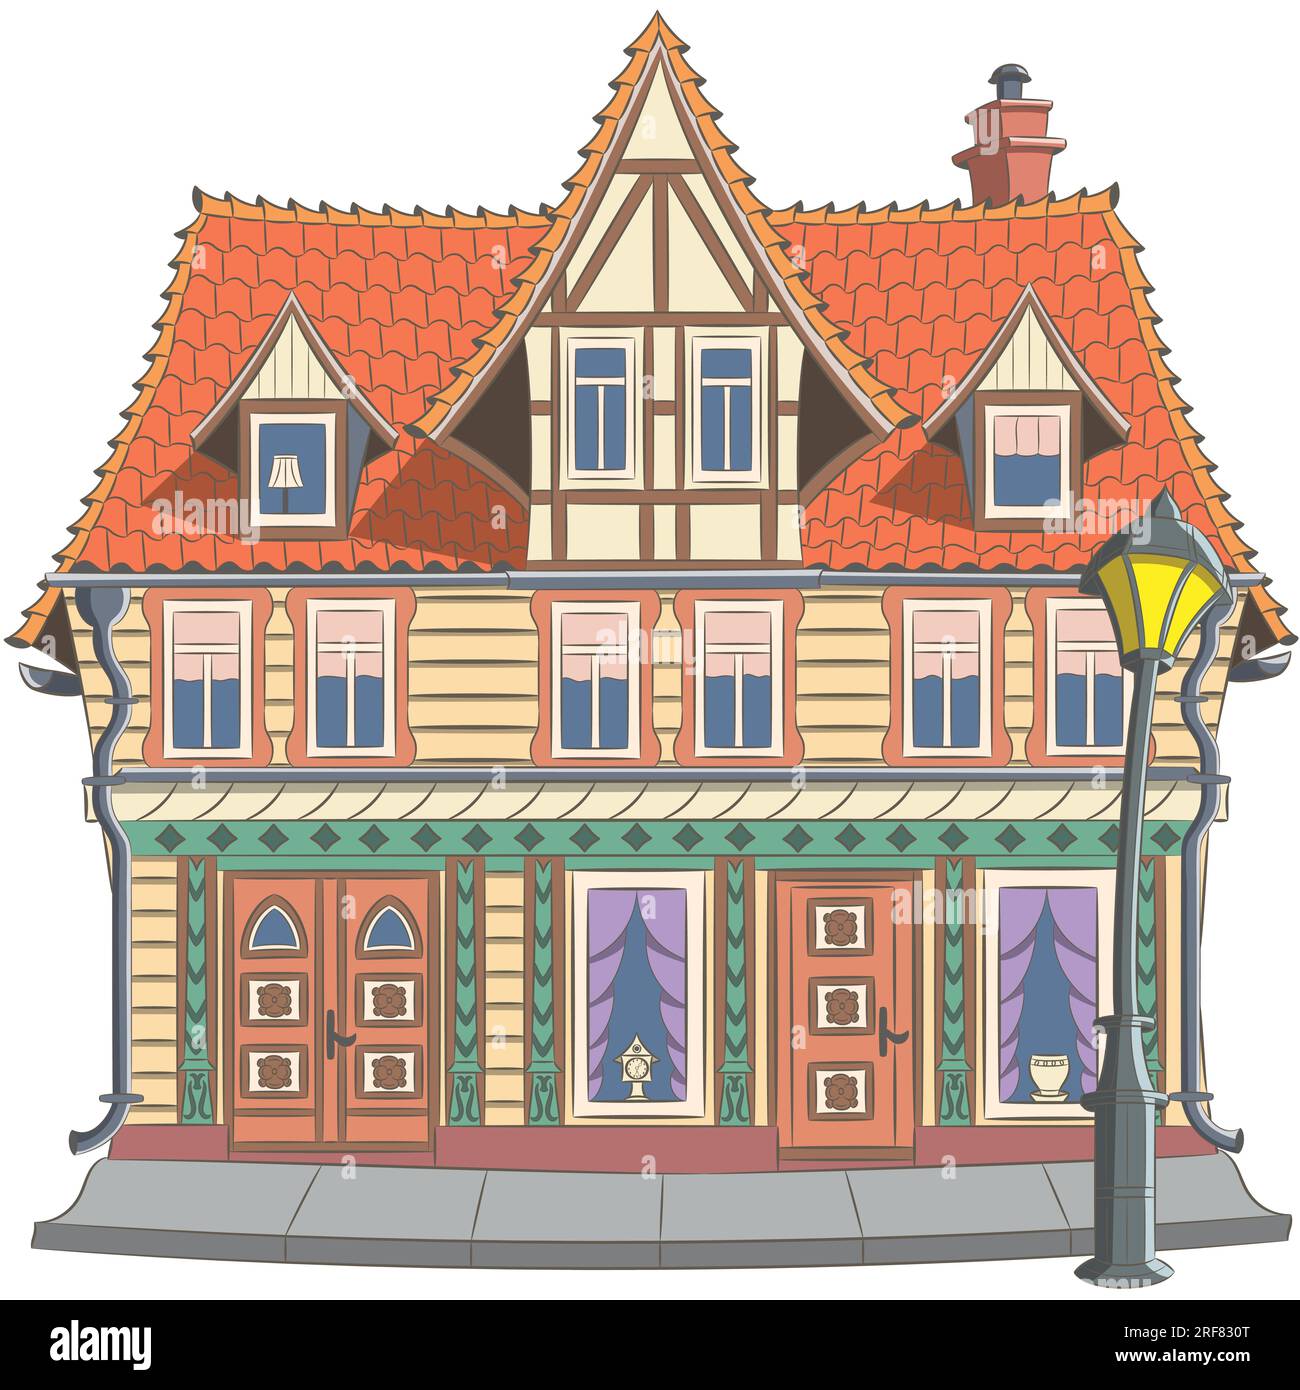 Zeichnung eines alten deutschen Fachwerkhauses mit einem Ziegeldach in Wernigerode. Deutschland. Vektordarstellung. Stock Vektor